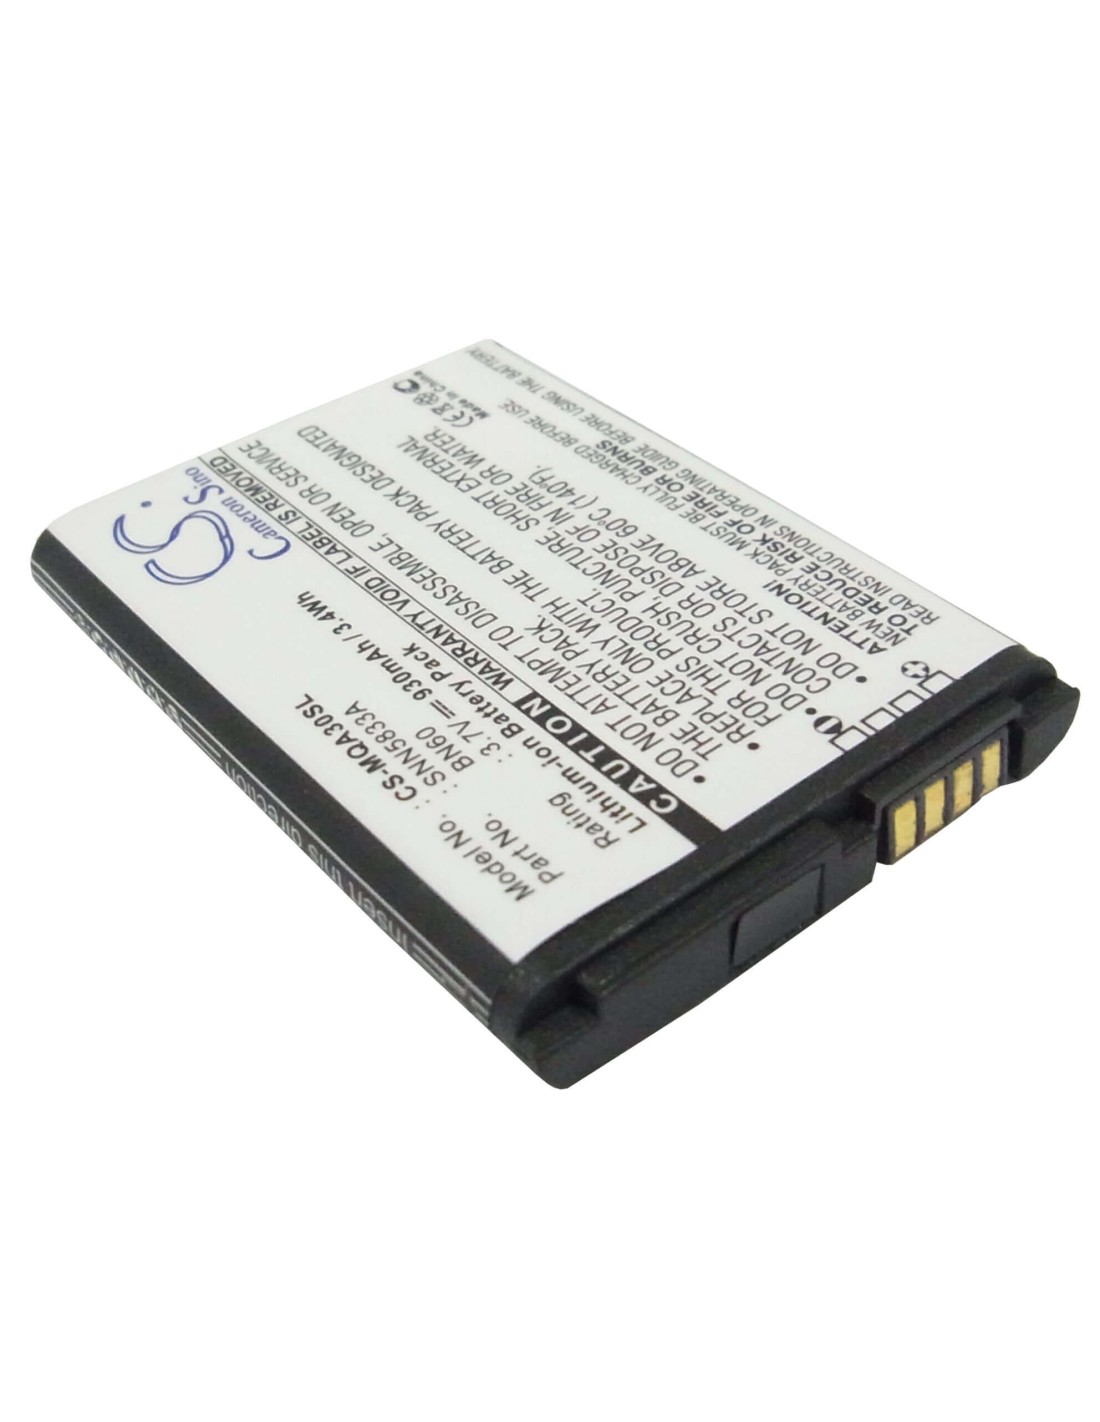 Battery for Motorola QA30, Hint QA30, Eco A45 3.7V, 930mAh - 3.44Wh